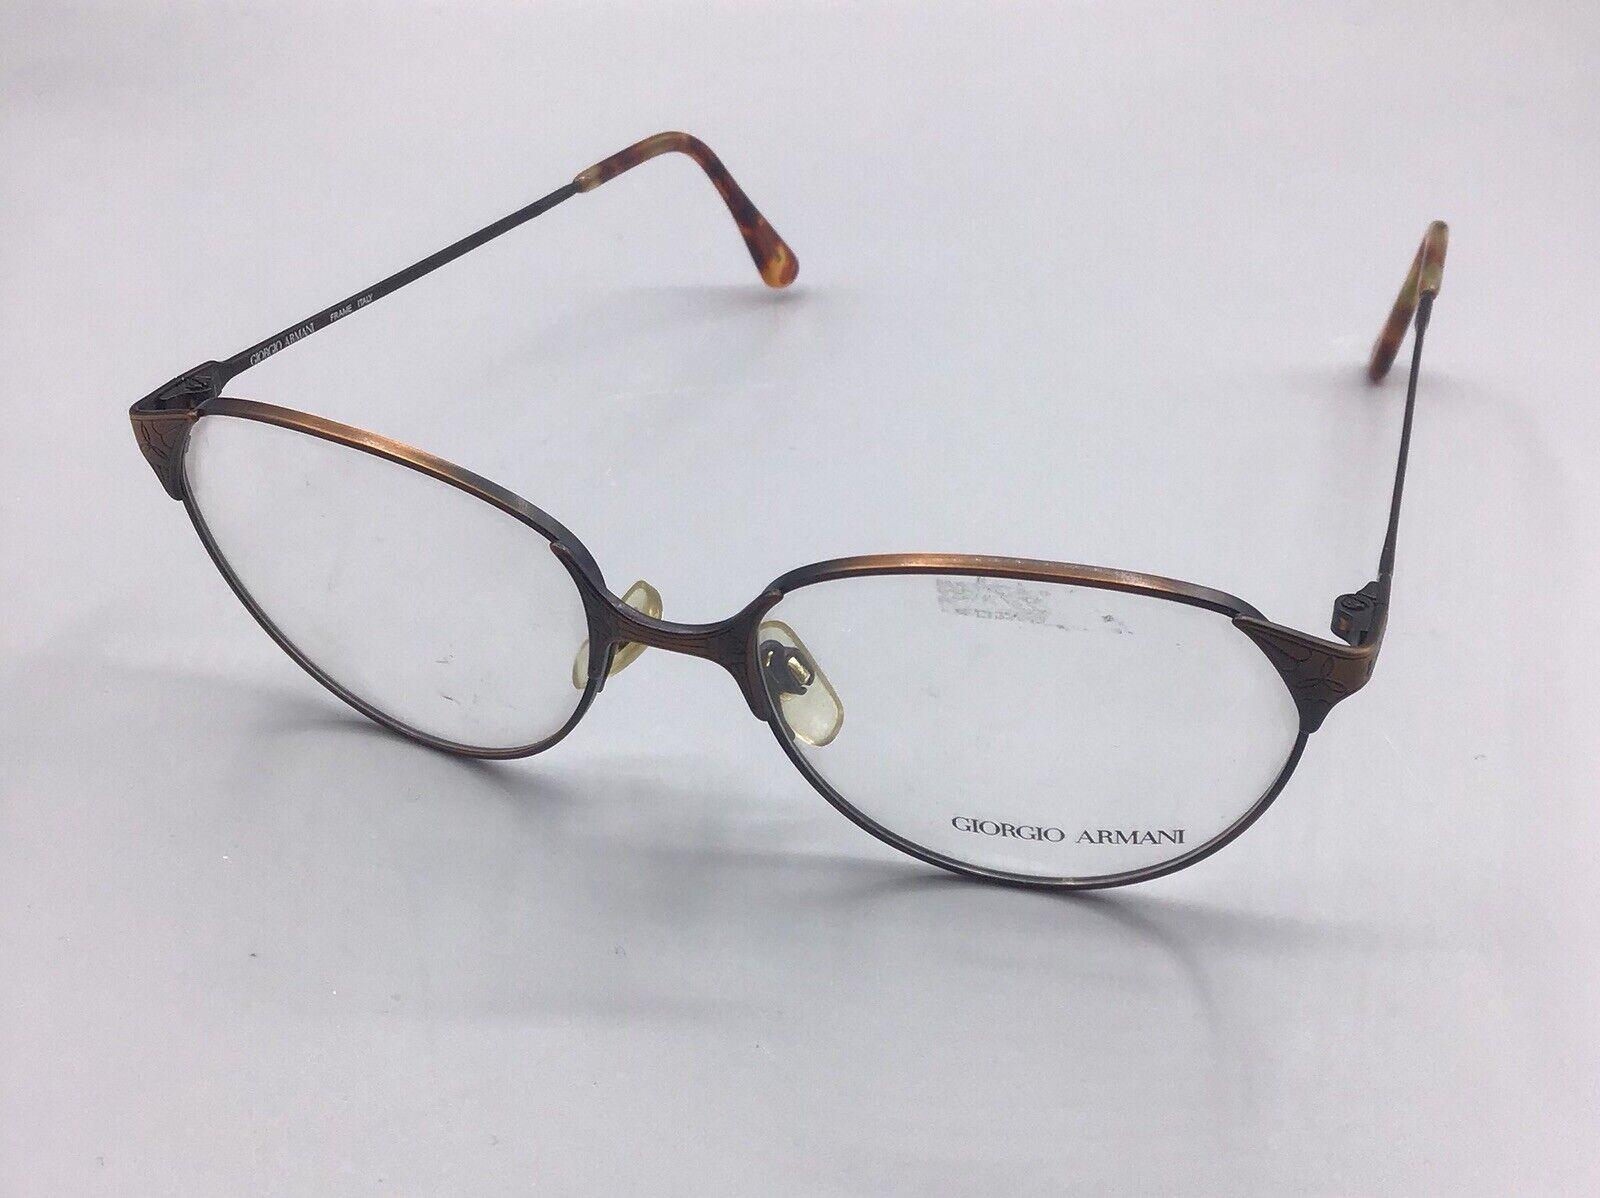 Giorgio Armani occhiale vintage 212 705 eyewear frame Italy brillen lunettes